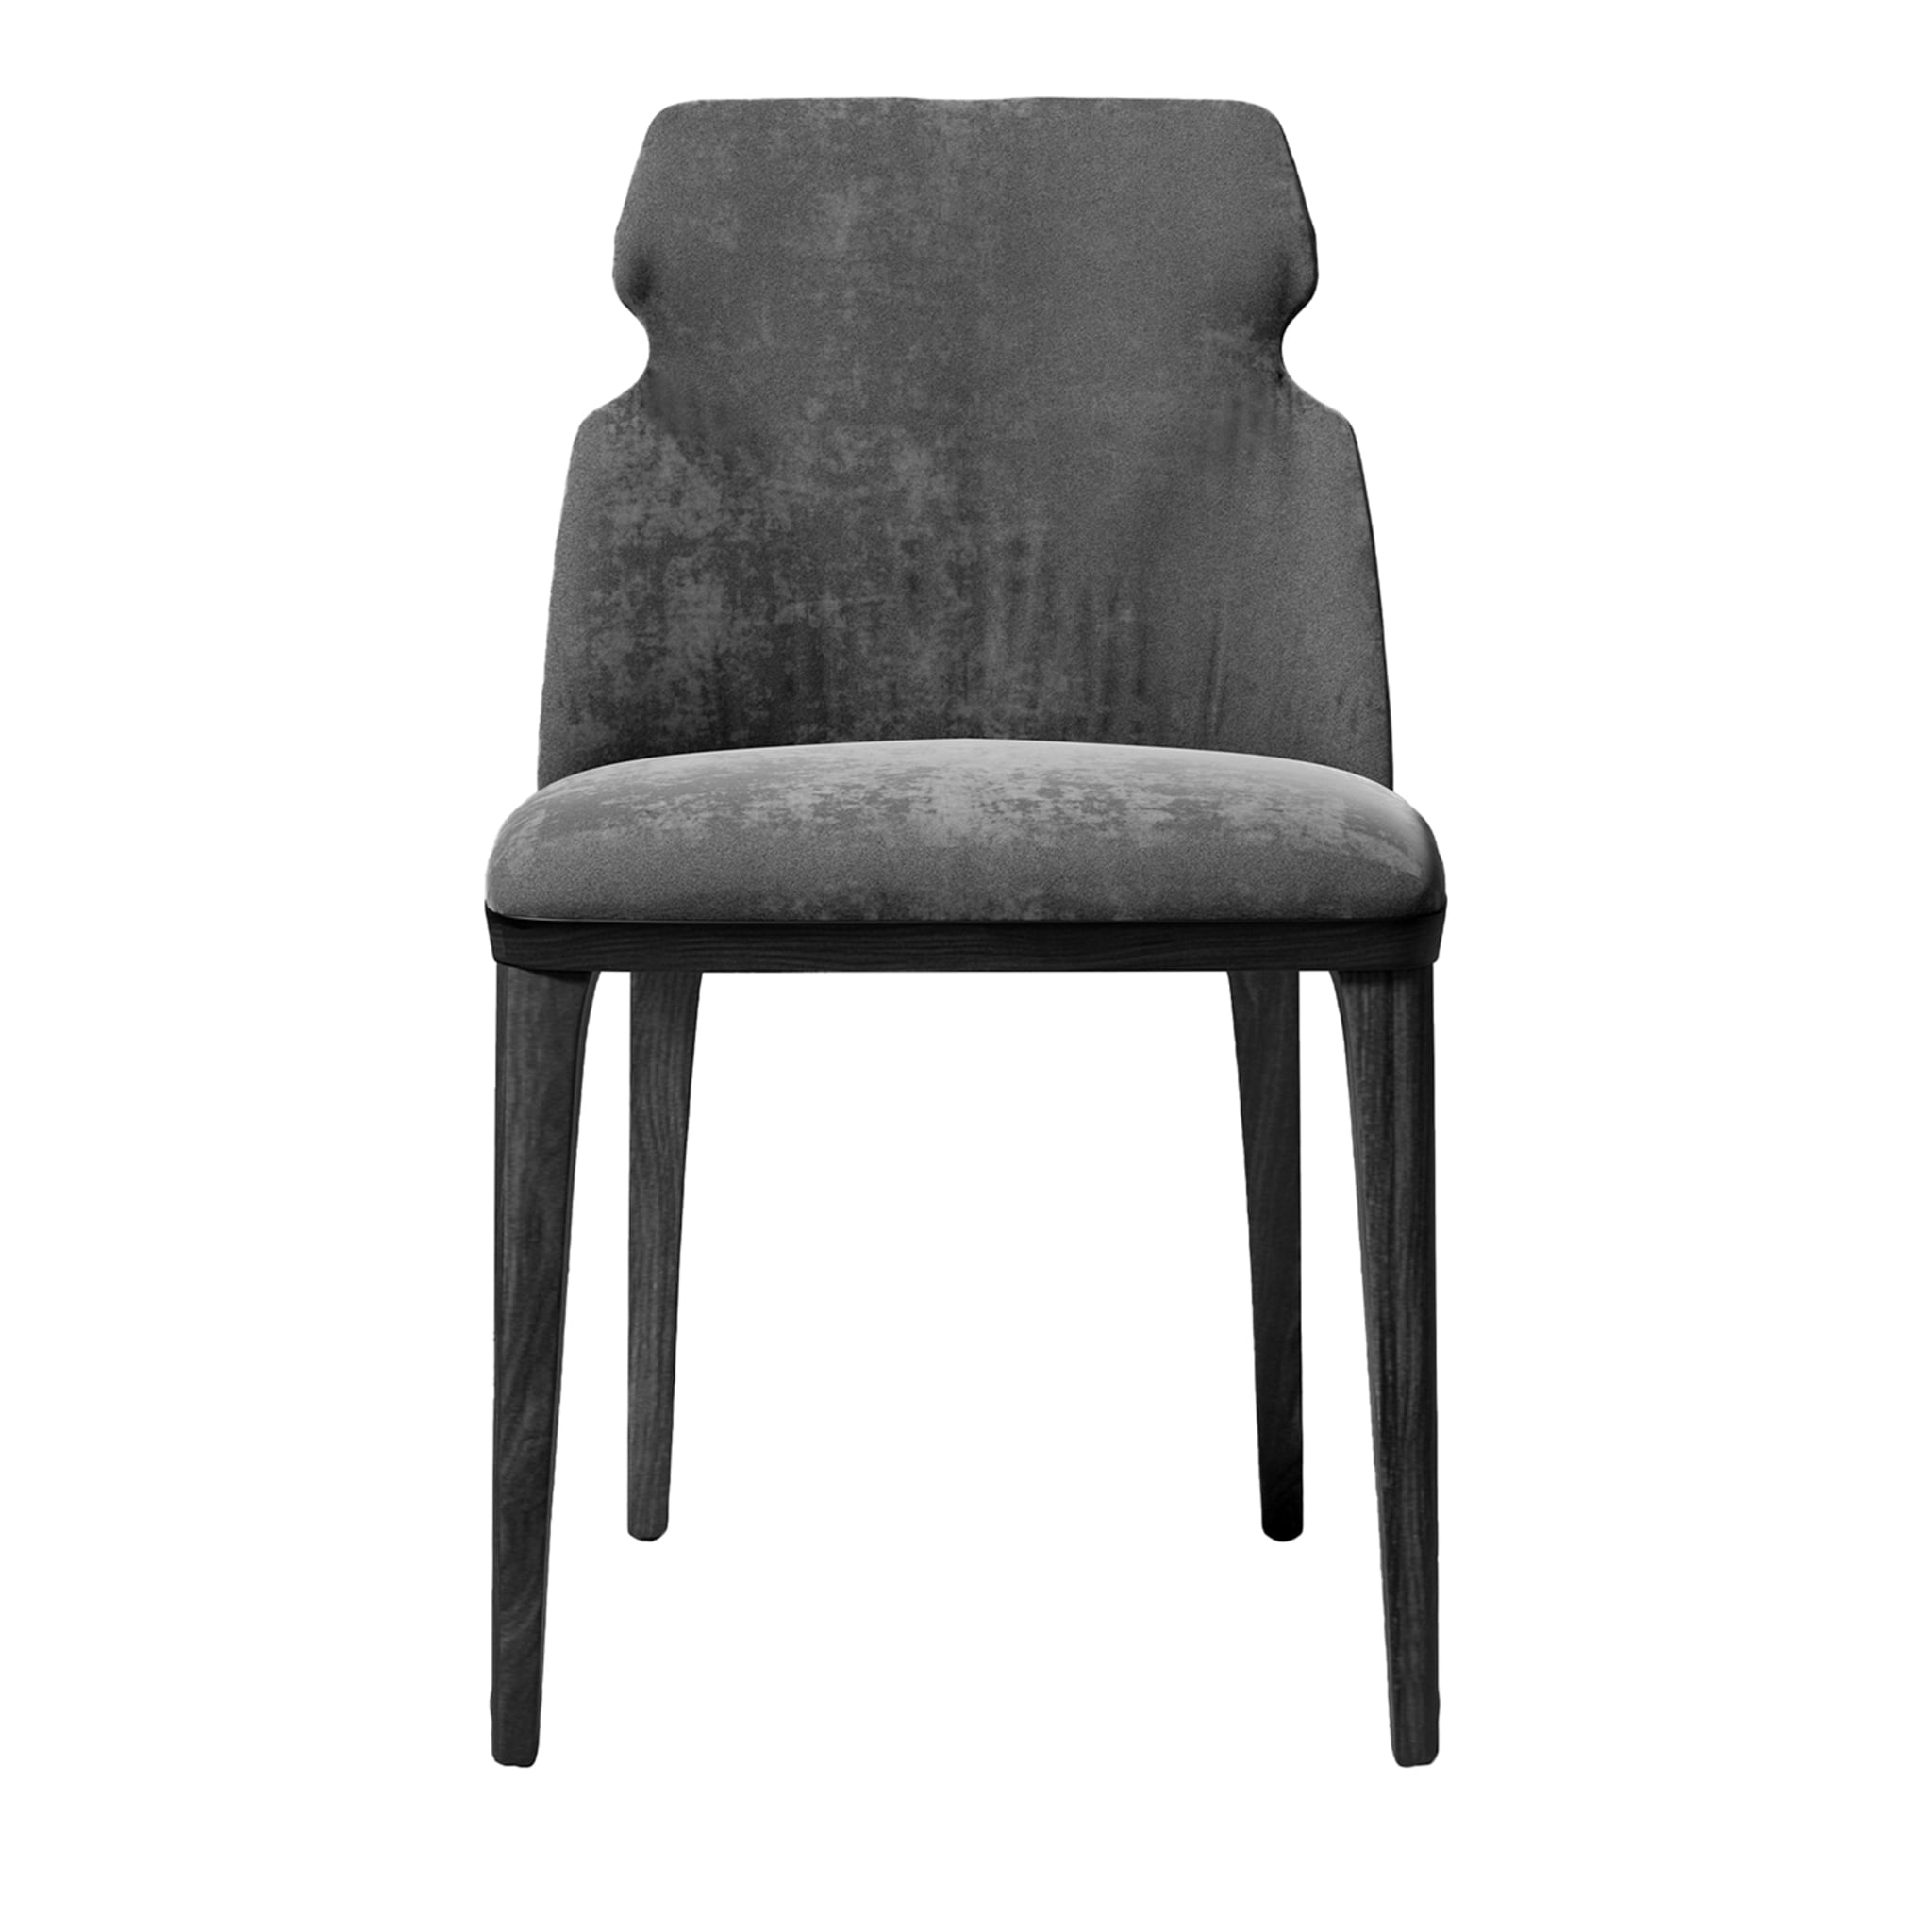 Shape Gray Velvet Chair - Main view